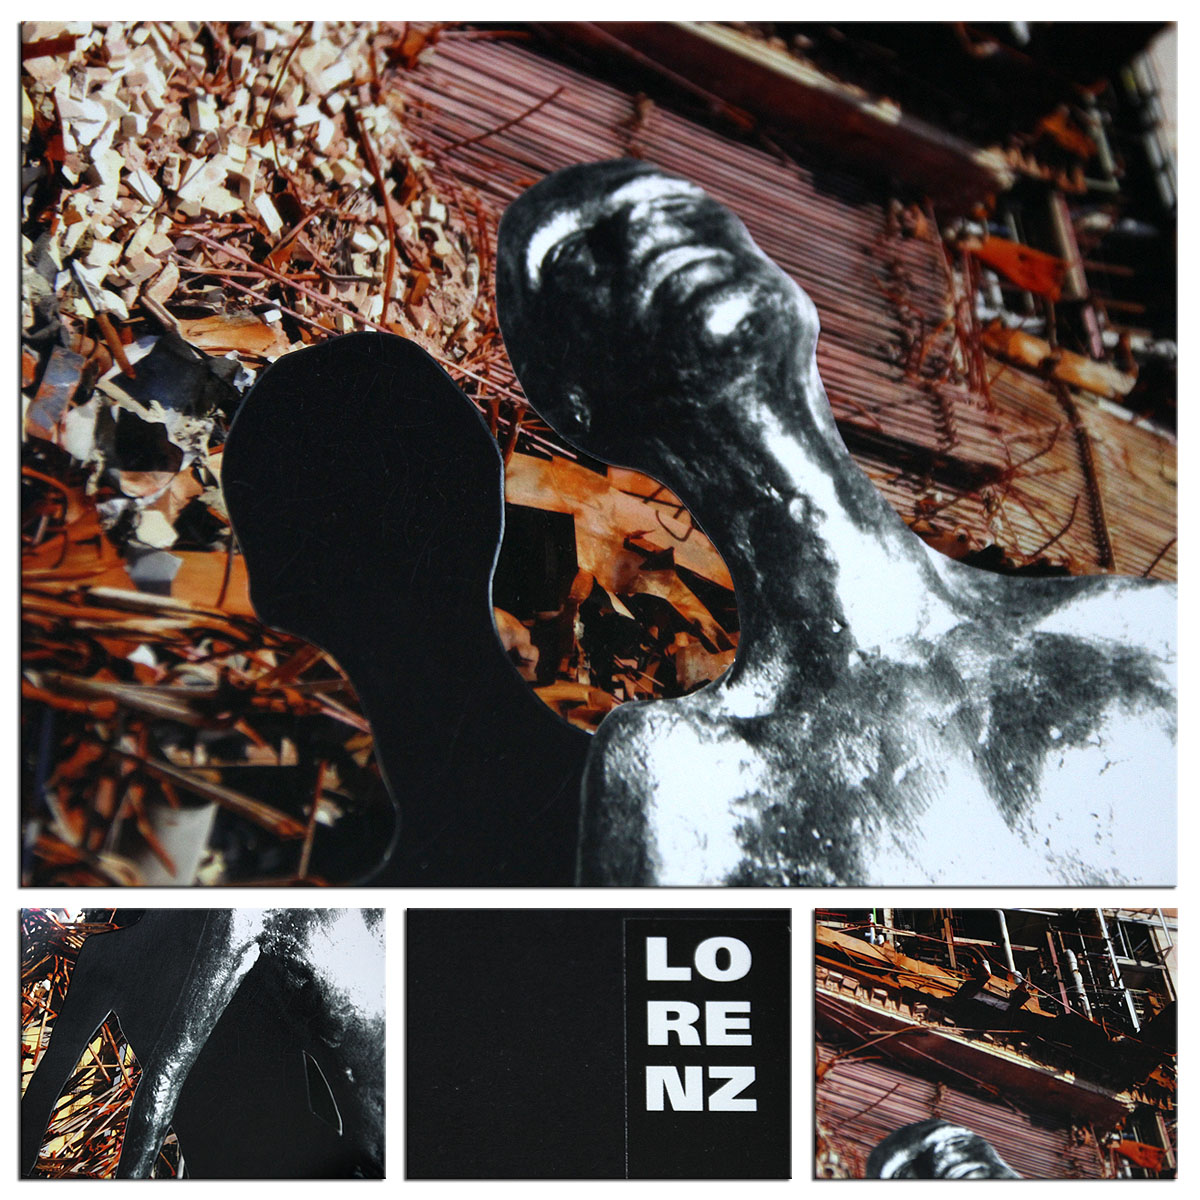 Surrealistische Collage, F. Lorenz: "Auferstehung"